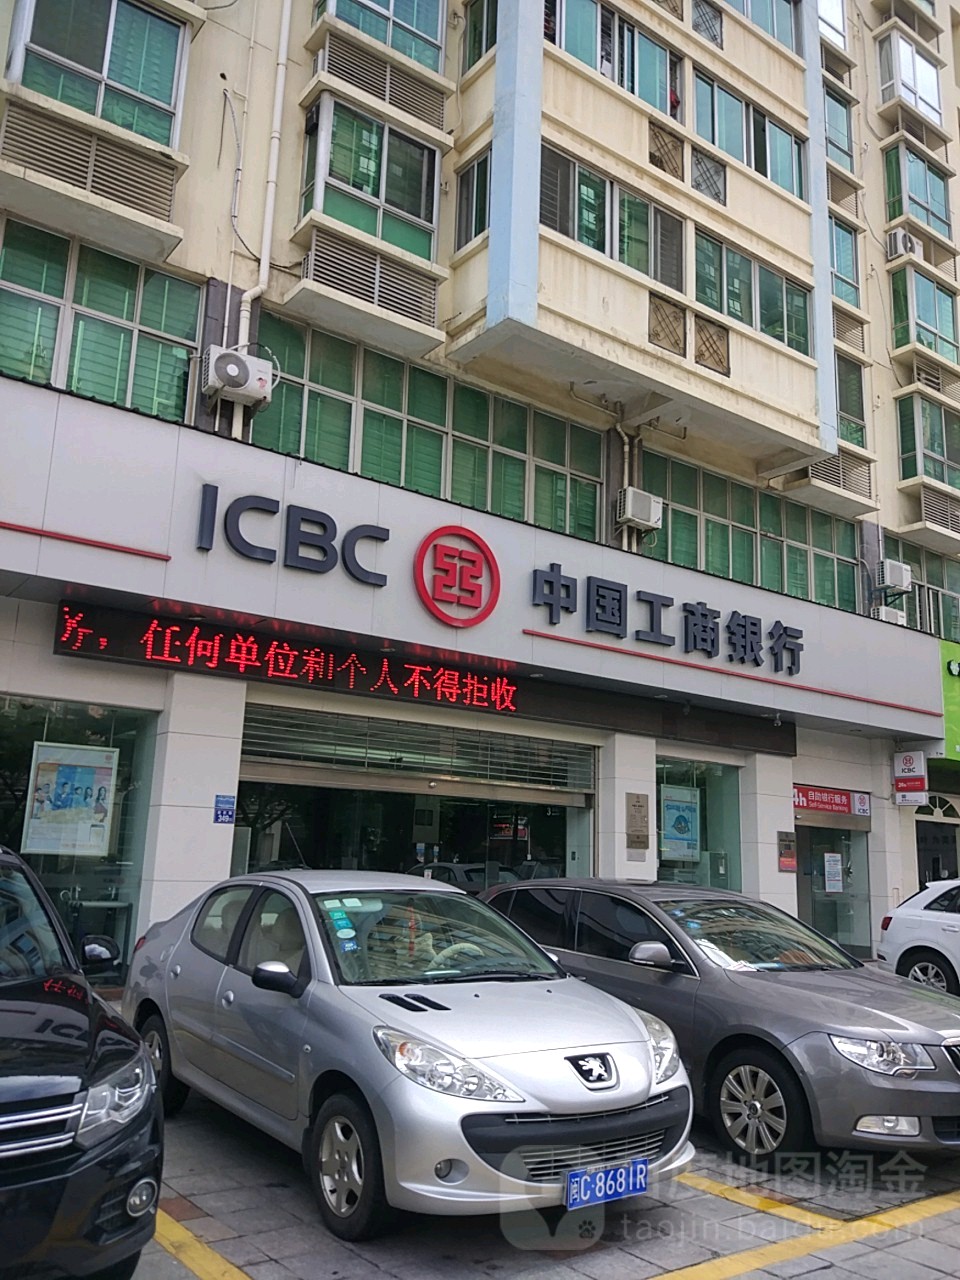 中国工商银行(晋江城关支行)